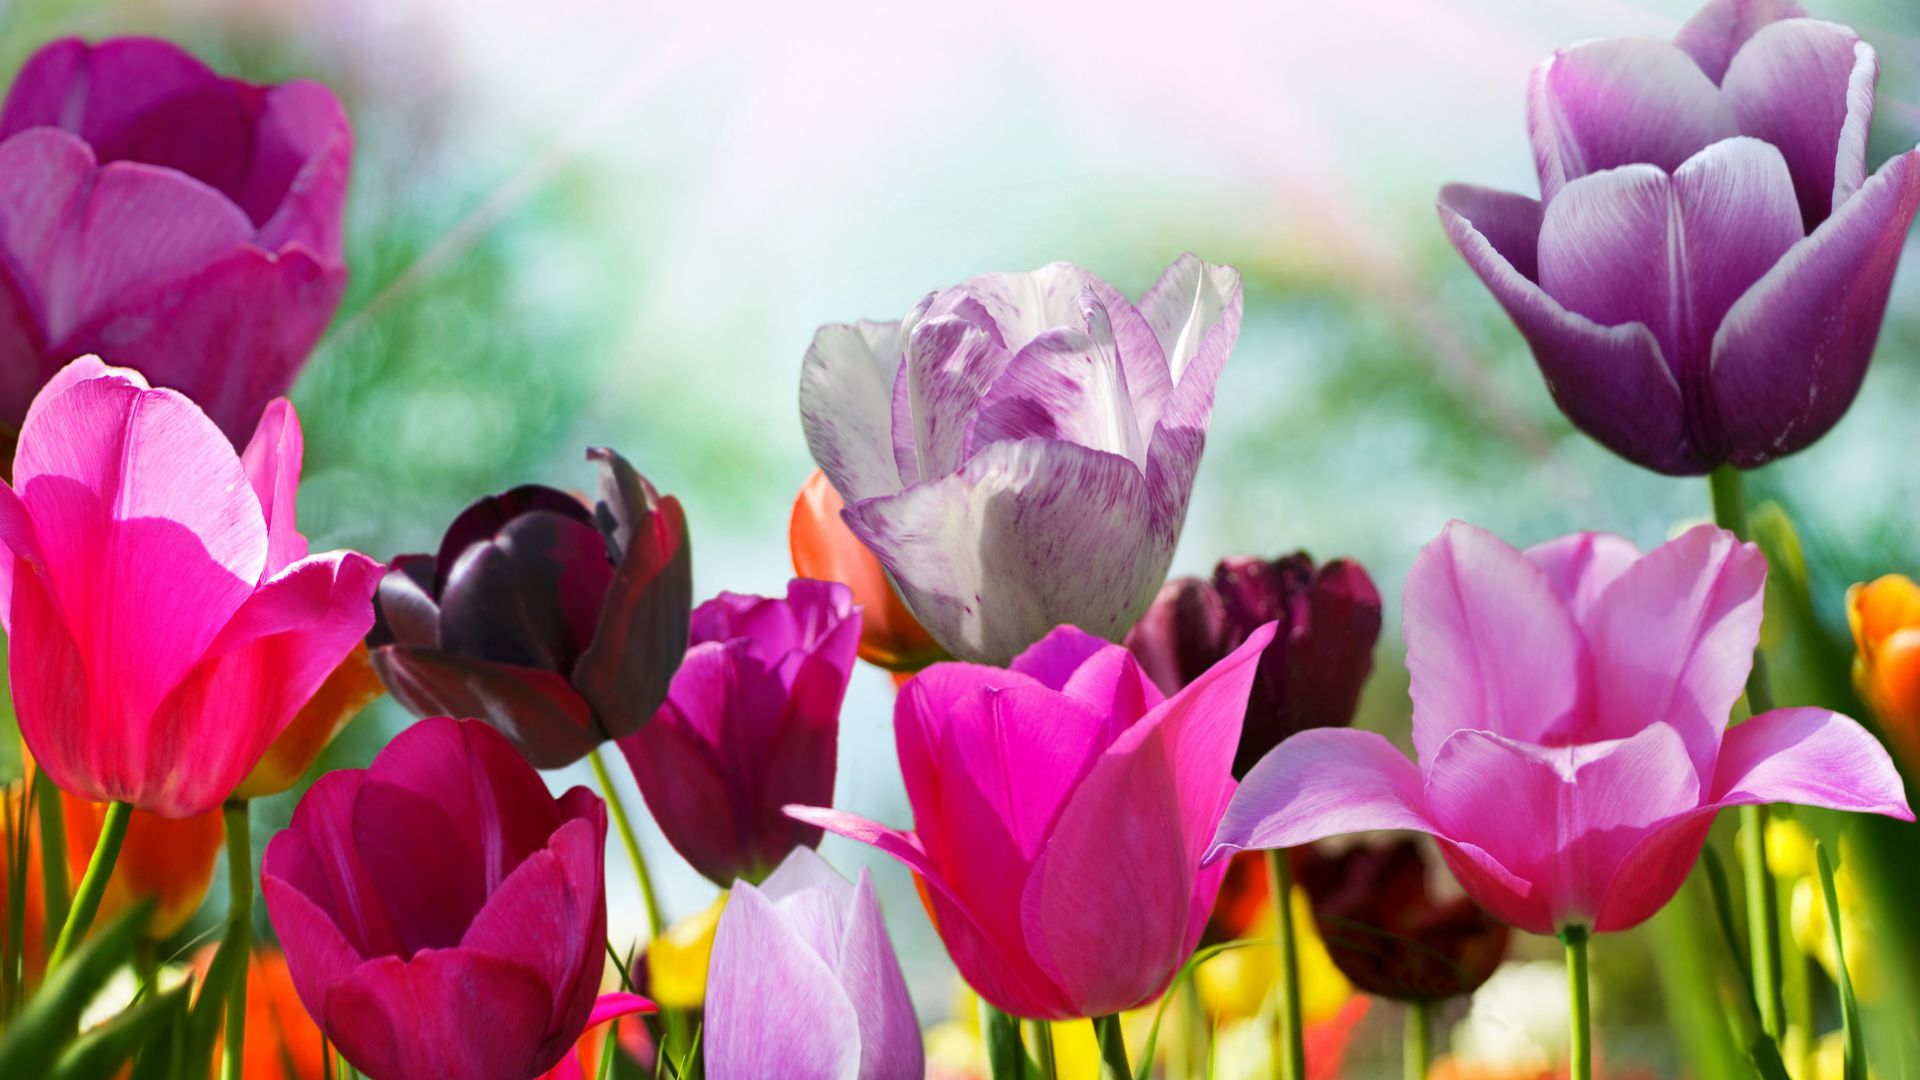 Тюльпаны, 5k, 4k, цветы, розовый, фиолетовый, Tulips, 5k, 4k wallpaper, flowers, pink, purple (horizontal)